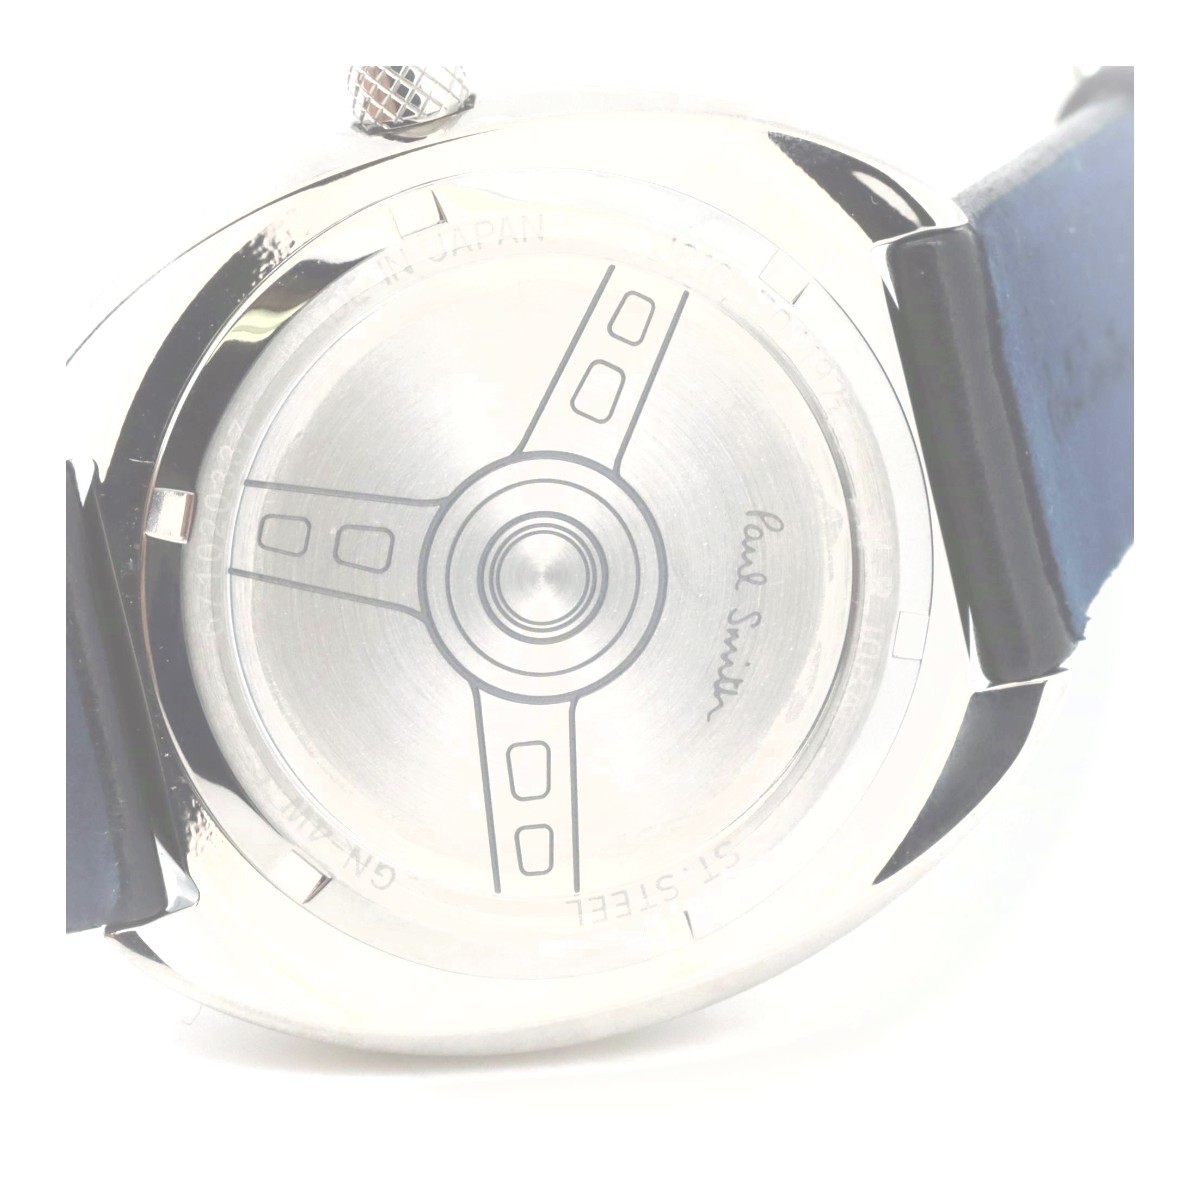 ポールスミス ソーラーテック ステアリング メンズ腕時計 J810-T021972 質屋出品_画像2